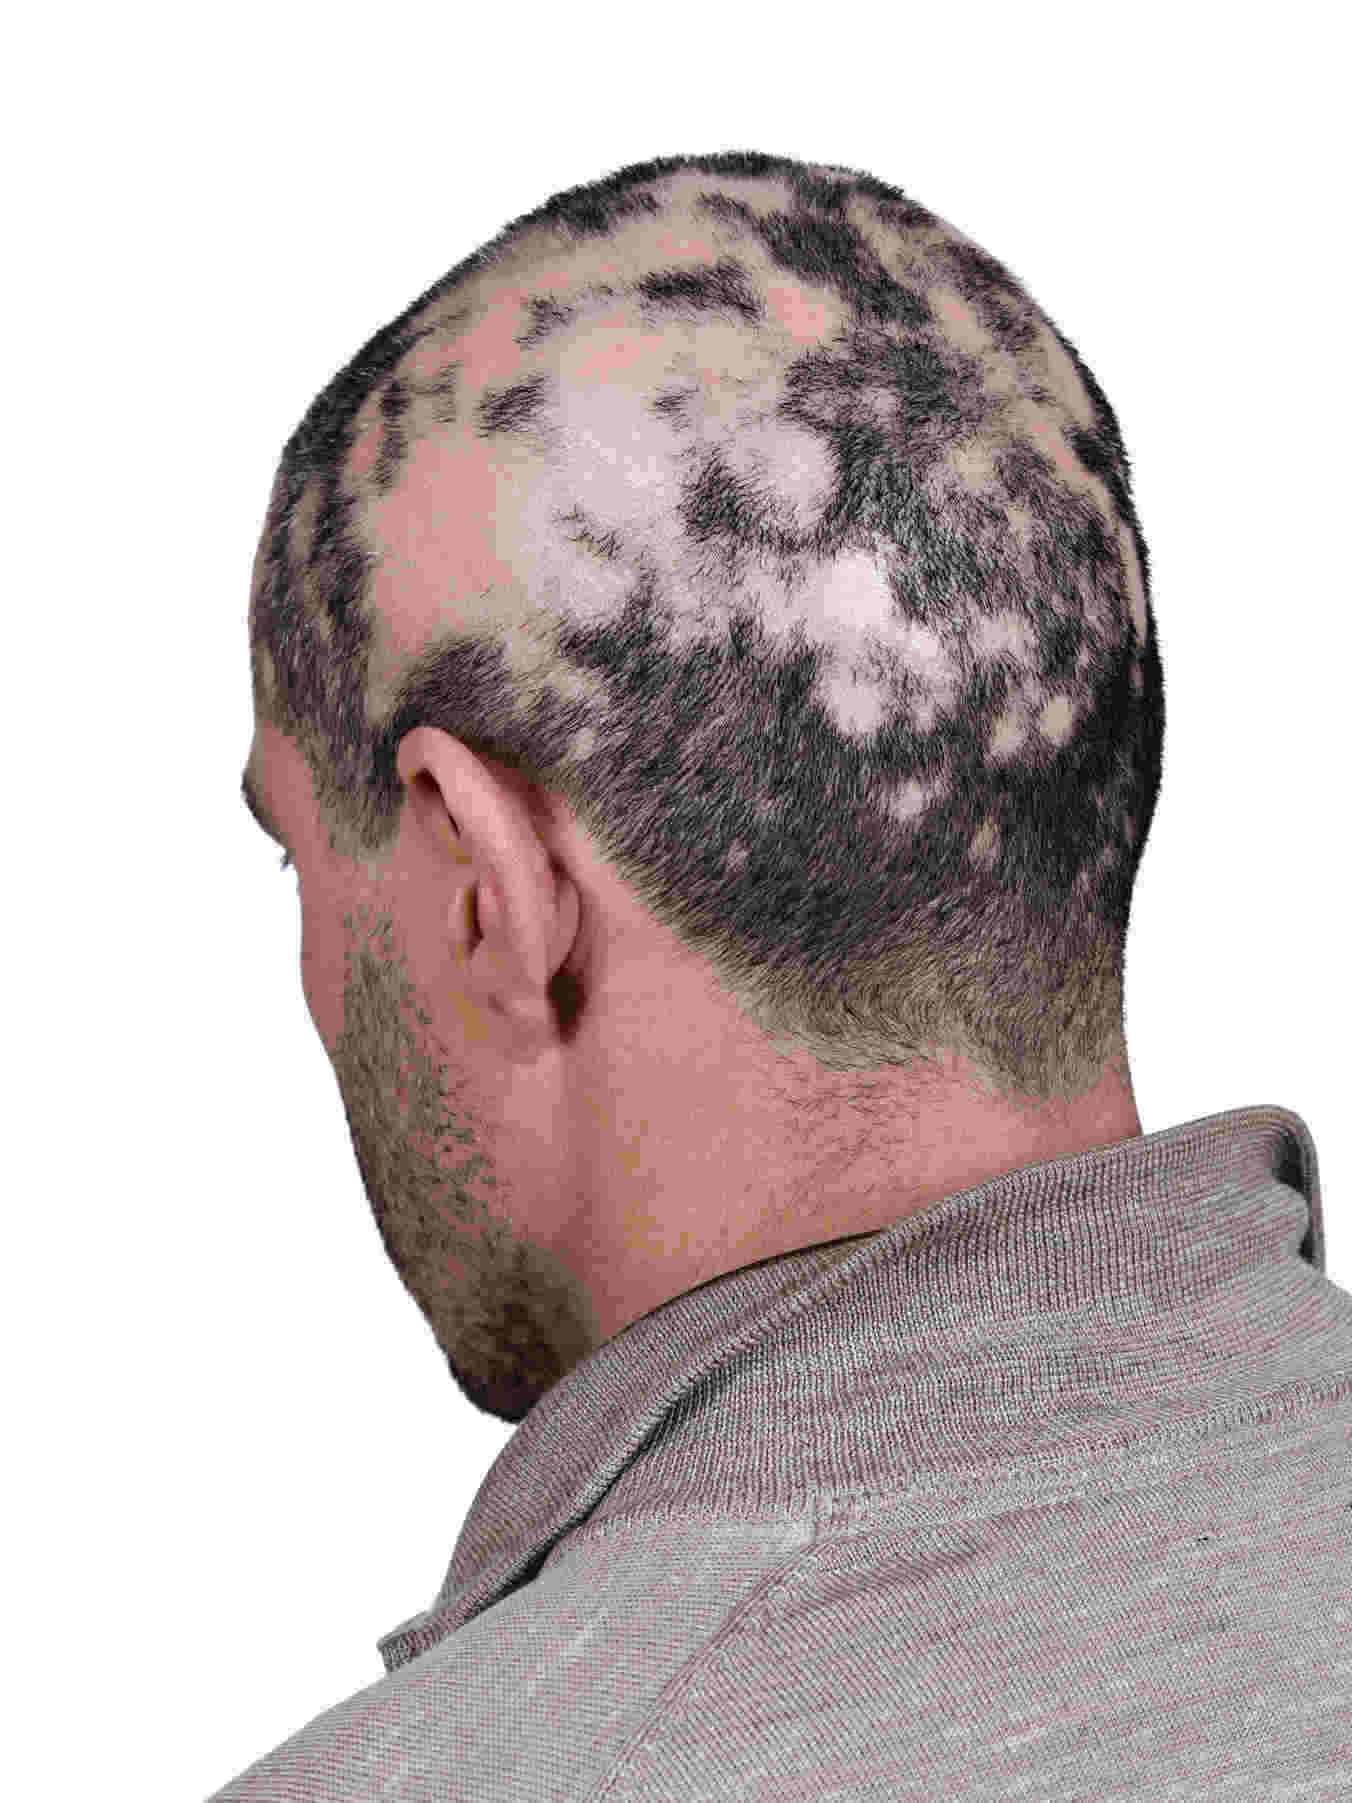 alopecia-areata-extensa-em-homem